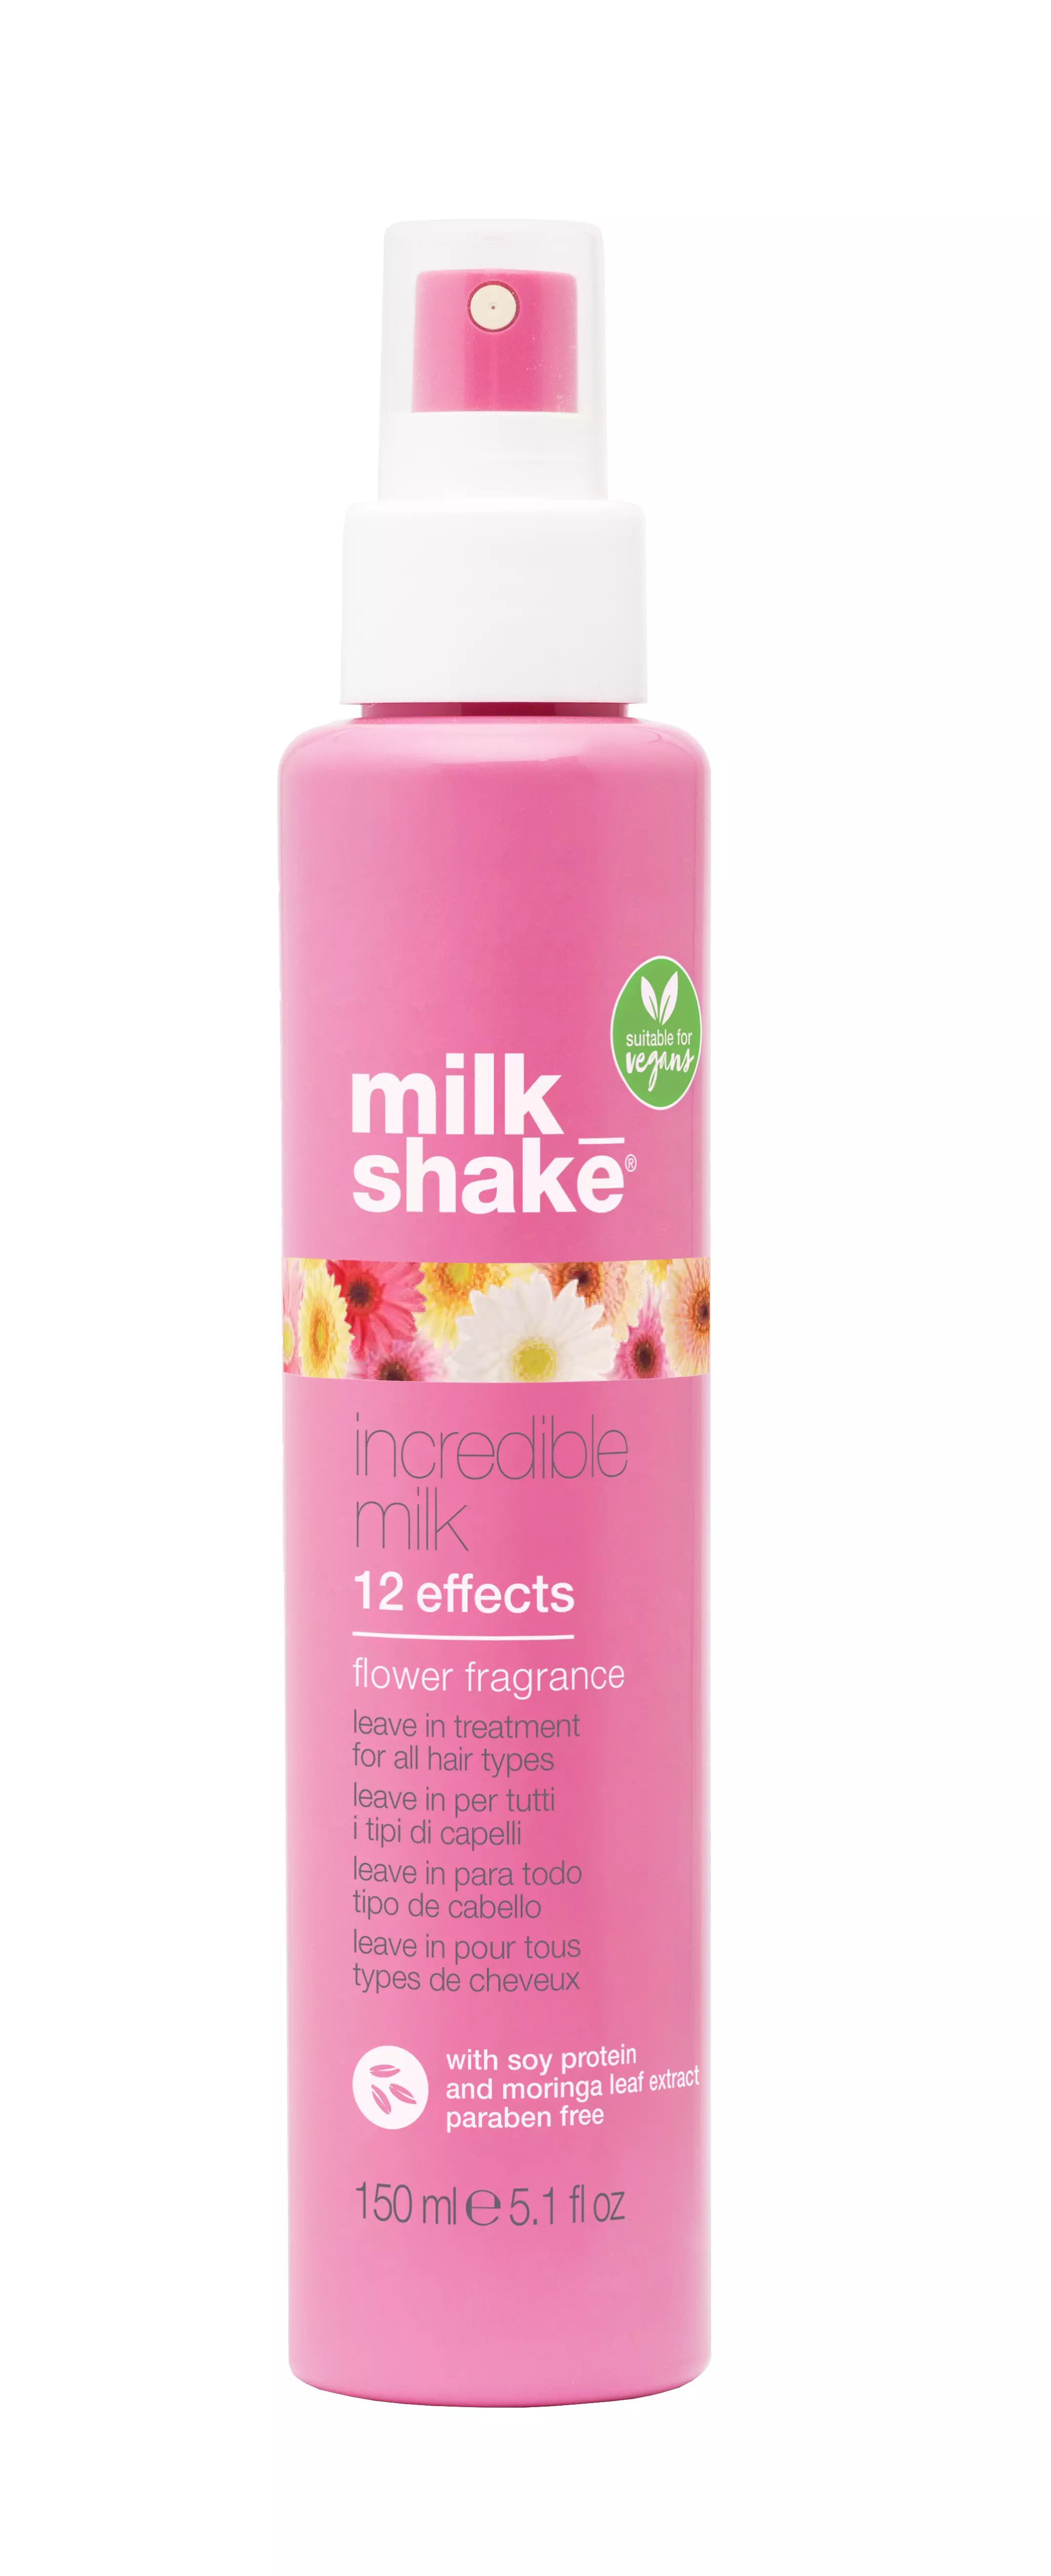 Milkshake Incredible Milk Effects Flower Power